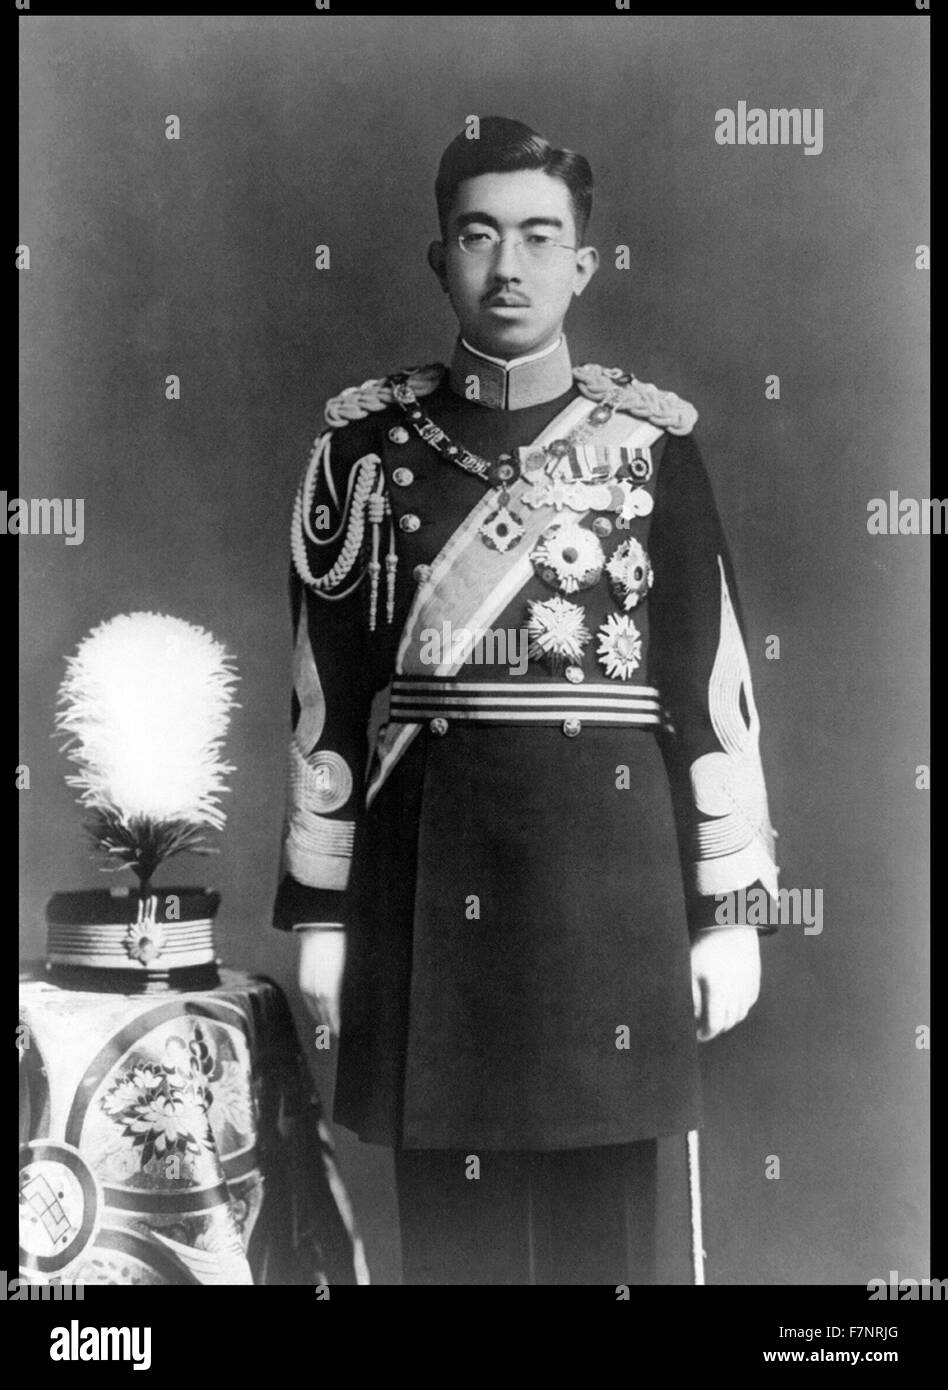 Fotografia di Imperatore Sh?wa (1901-1989) Imperatore del Giappone, noto anche come Hirohito, vestito in uniforme. Datata 1935 Foto Stock